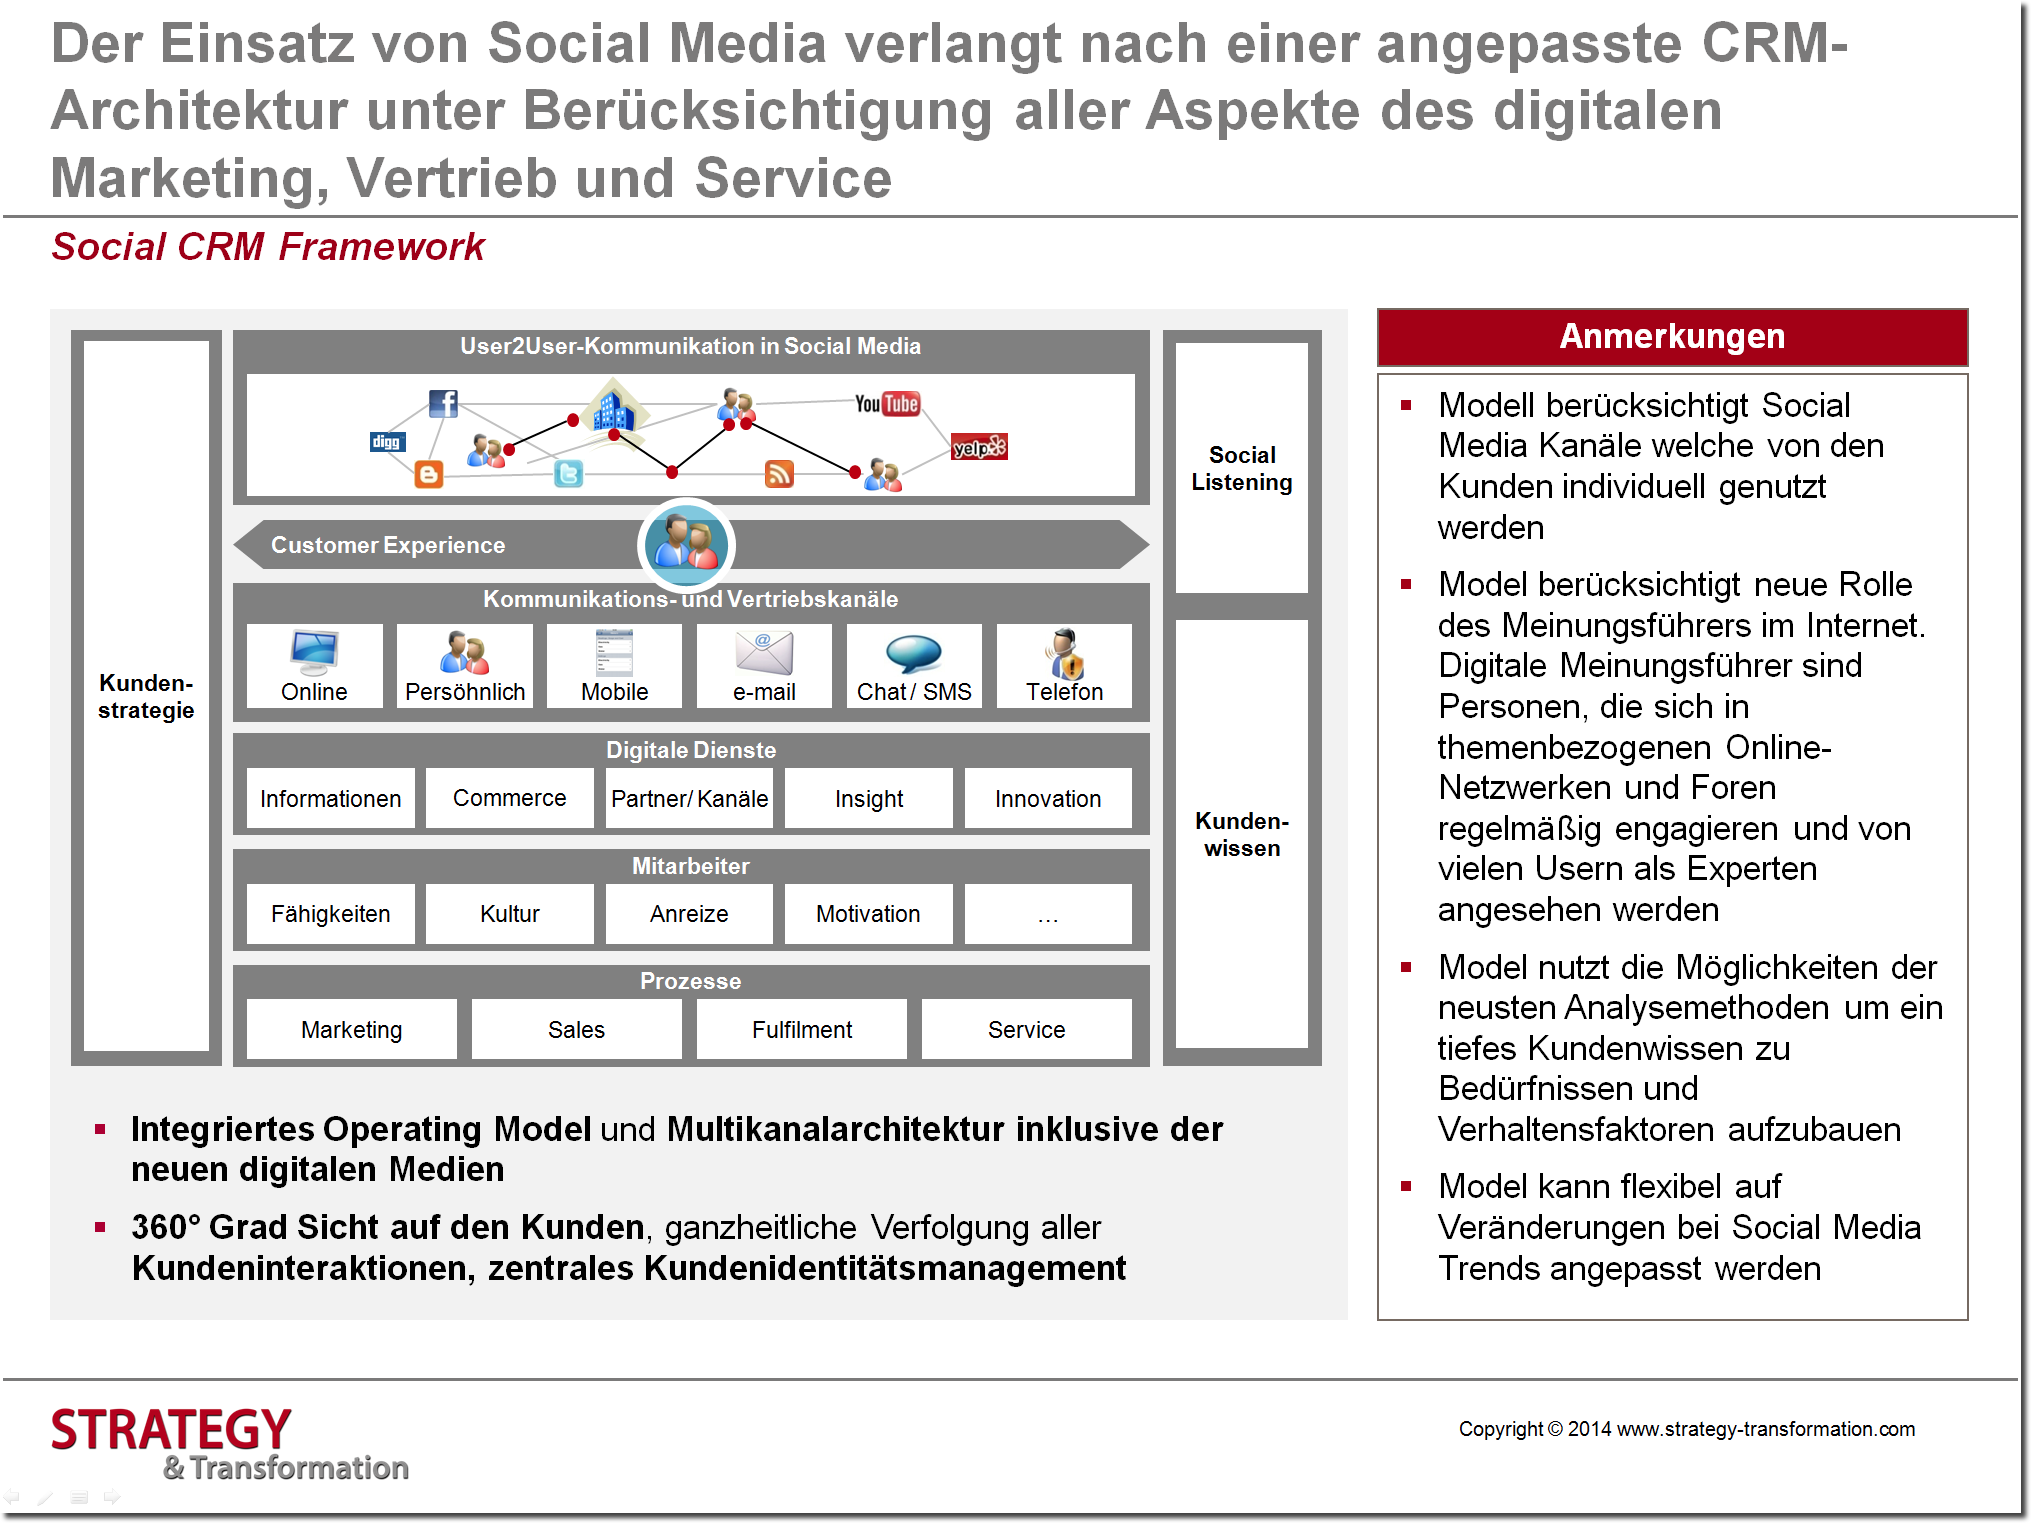 Social Media verstehen_Social CRM Framework